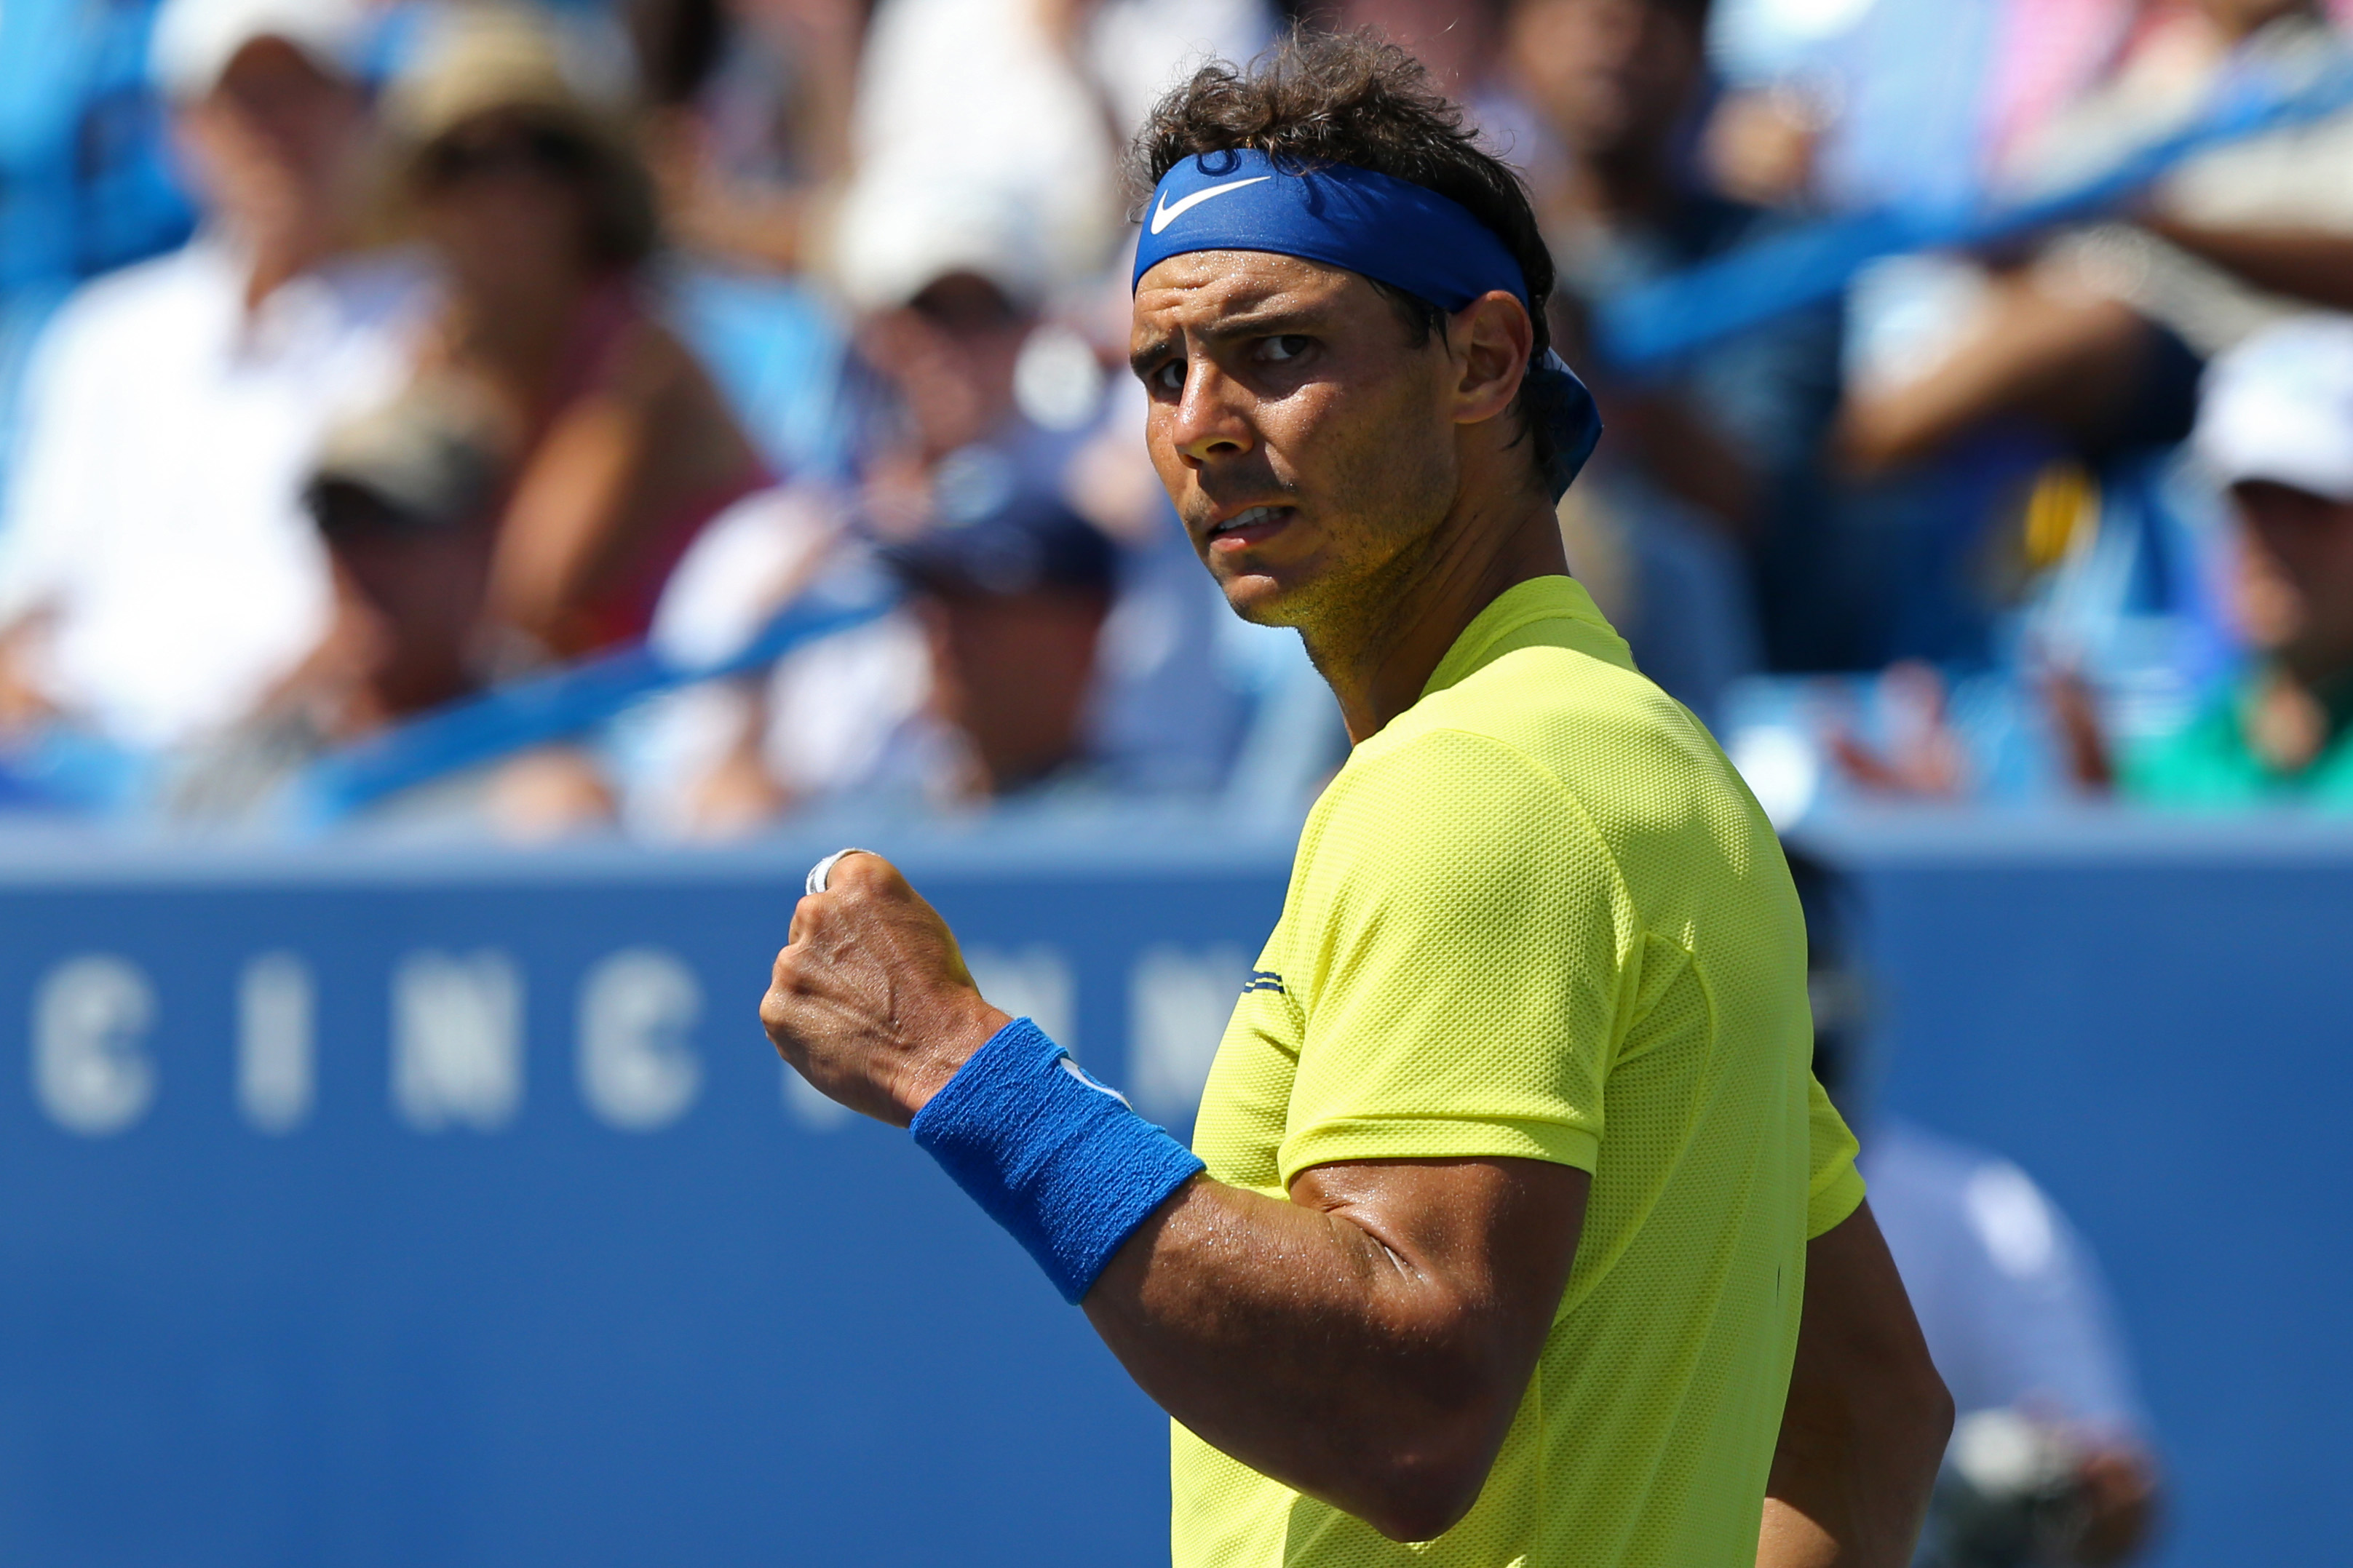 Tennis: ATP chief hails Nadal's 'unprecedented' return to world No. 1